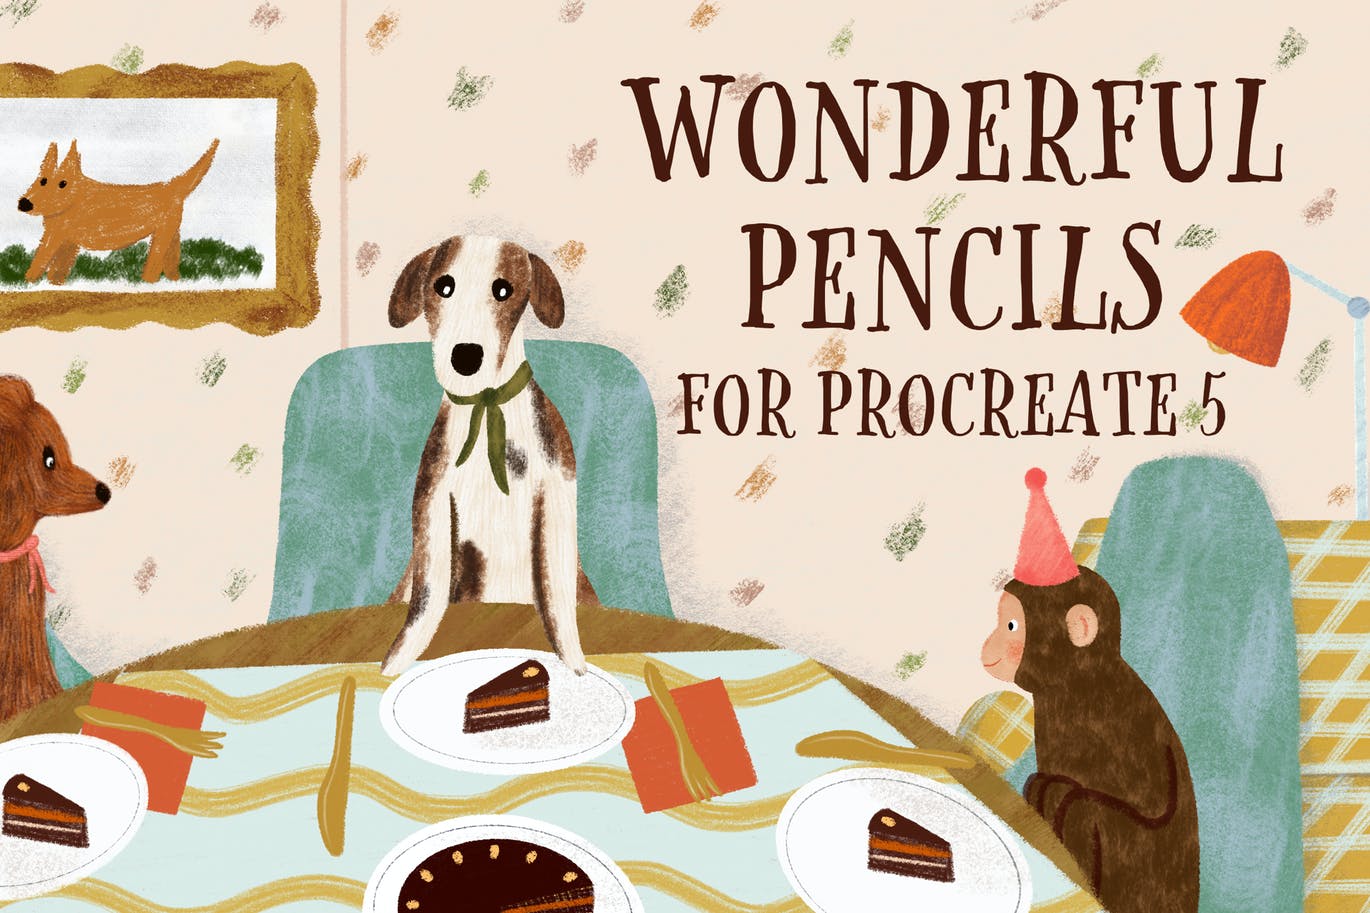 美妙铅笔Procreate笔刷 Wonderful Pencils for Procreate 笔刷资源 第1张